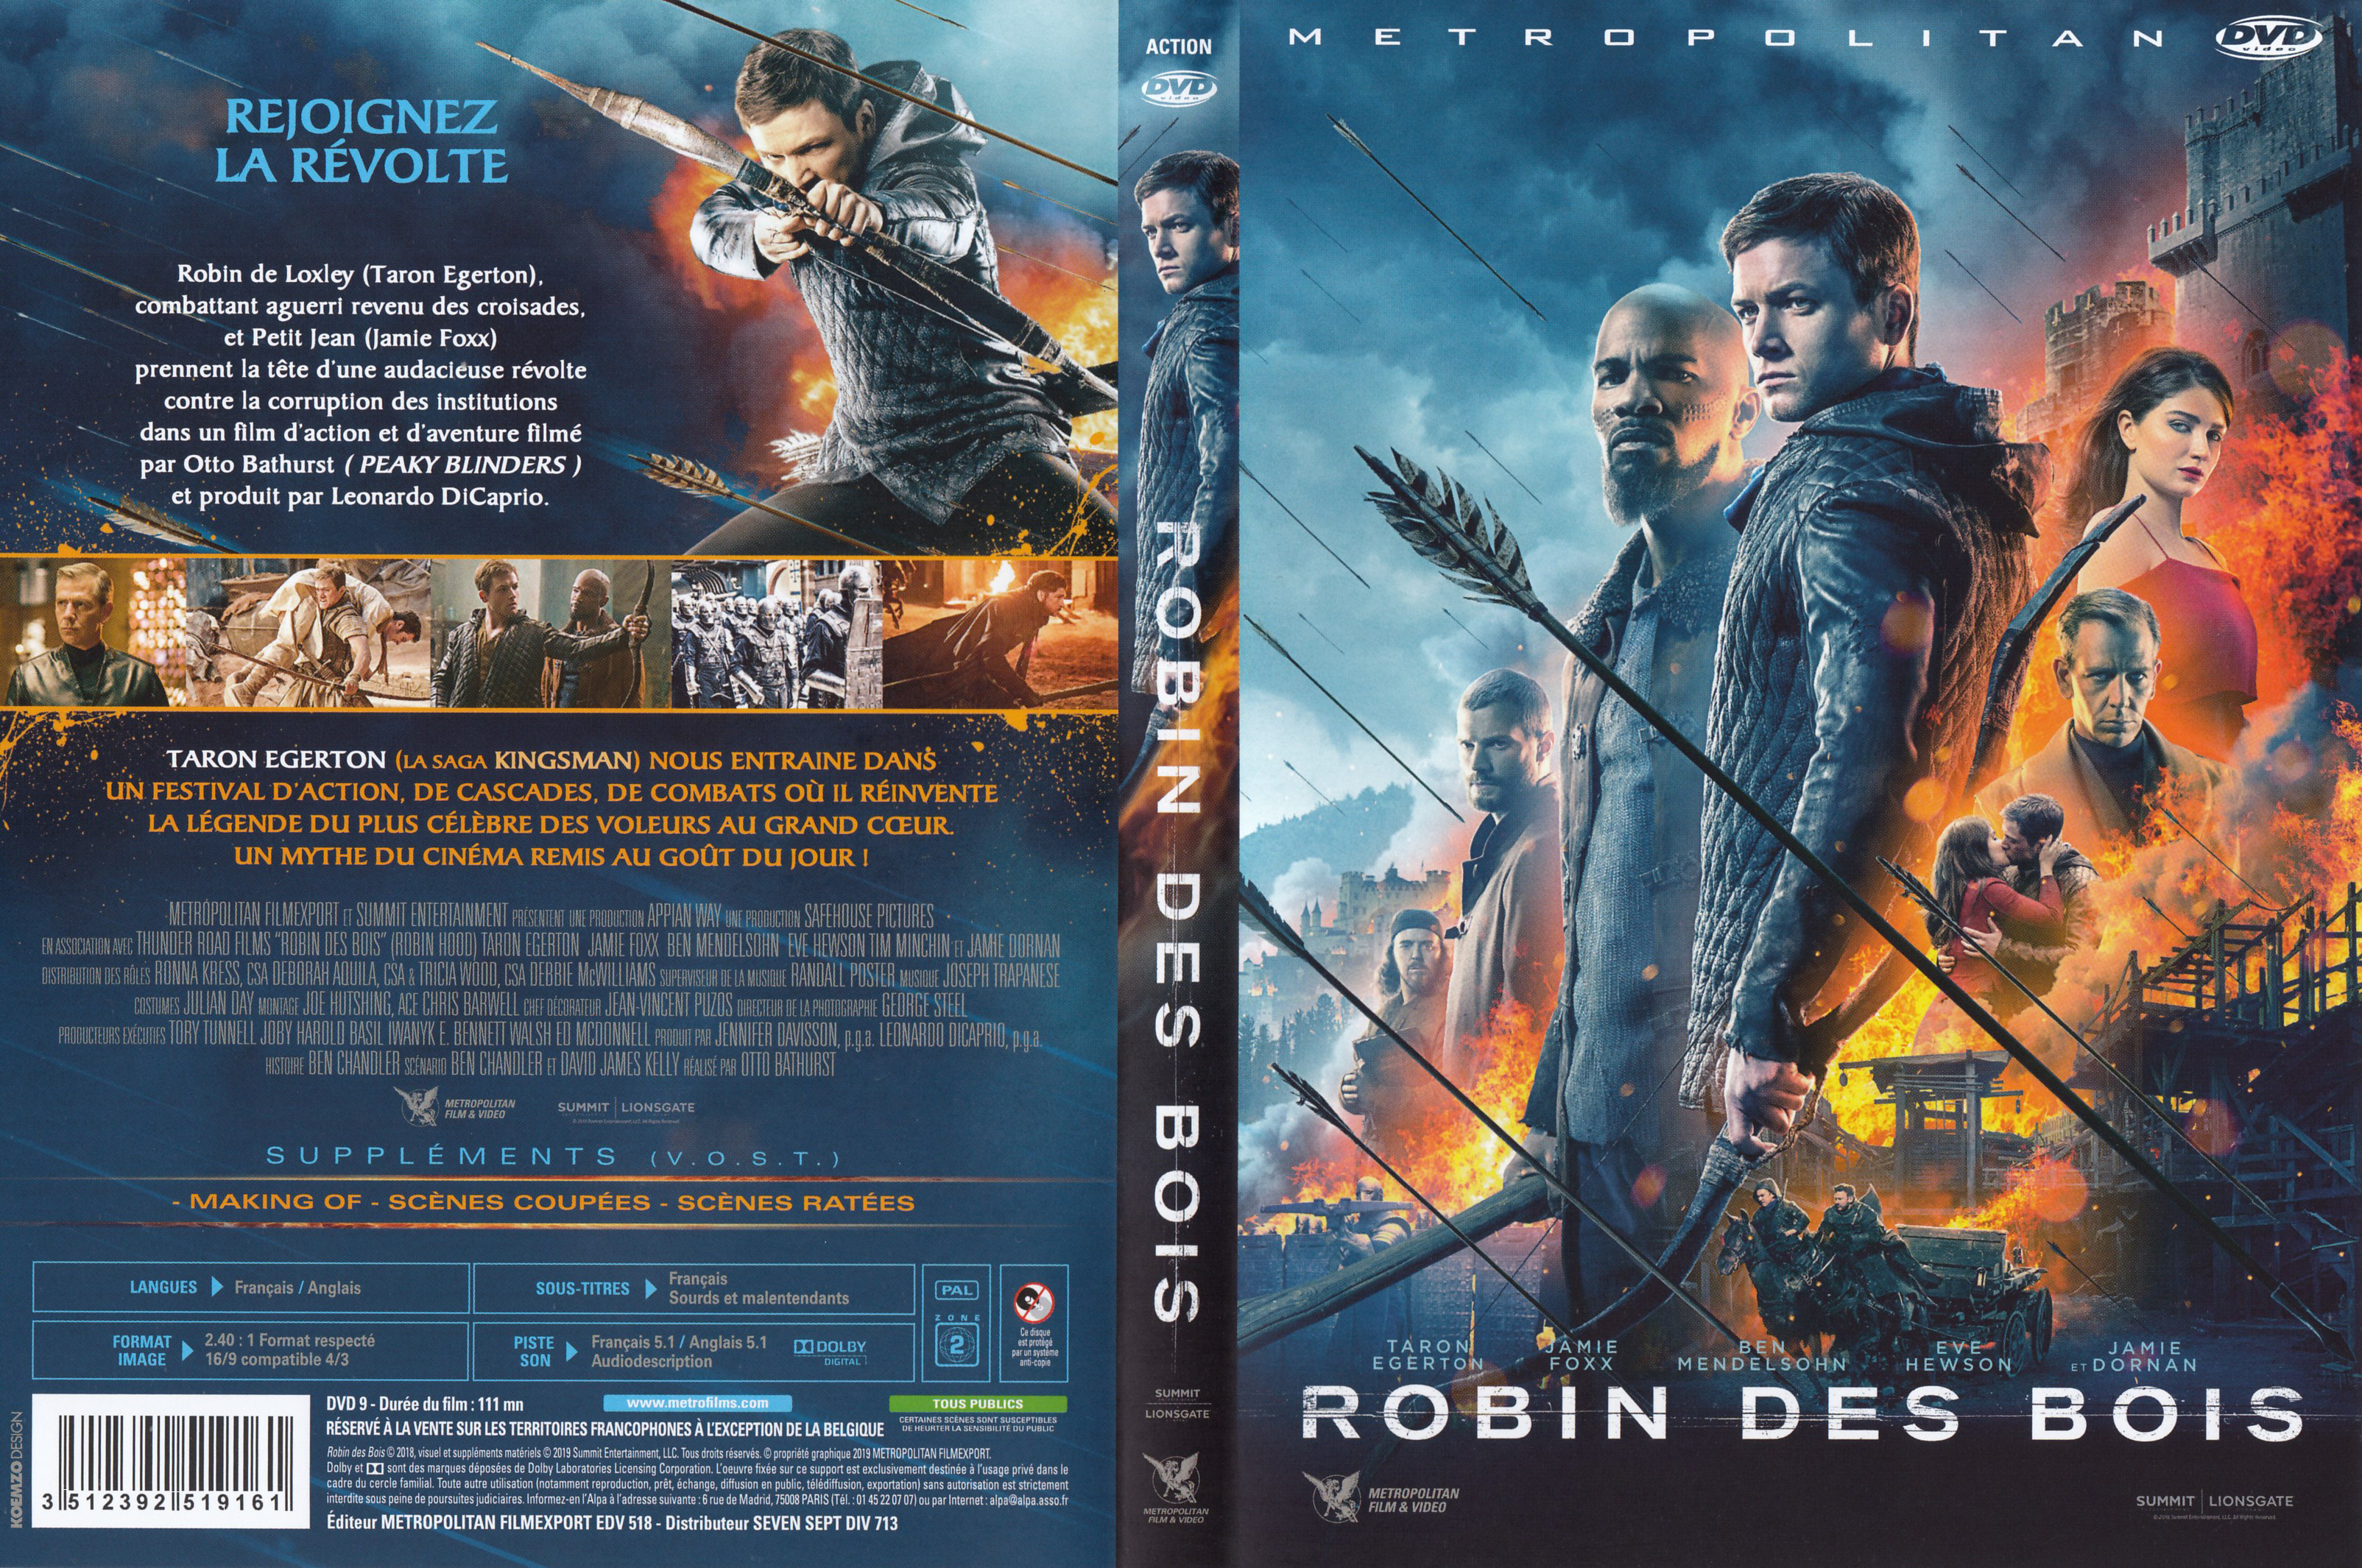 Jaquette DVD Robin des bois (2018)